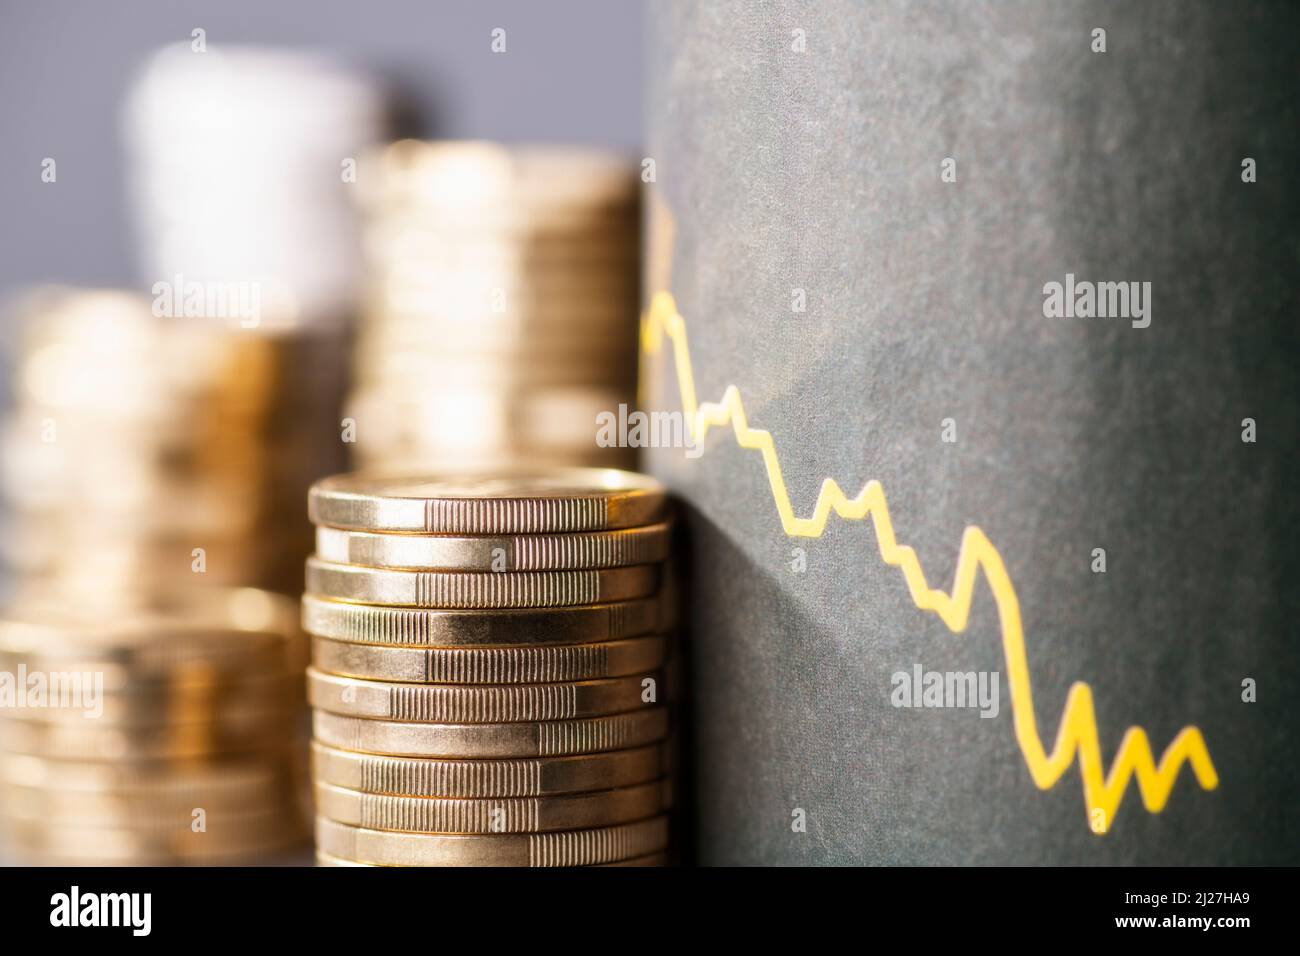 Stapel von Münzen neben einer Abwärtskurve, die den Wertverlust des Geldes durch Inflation symbolisiert Stockfoto